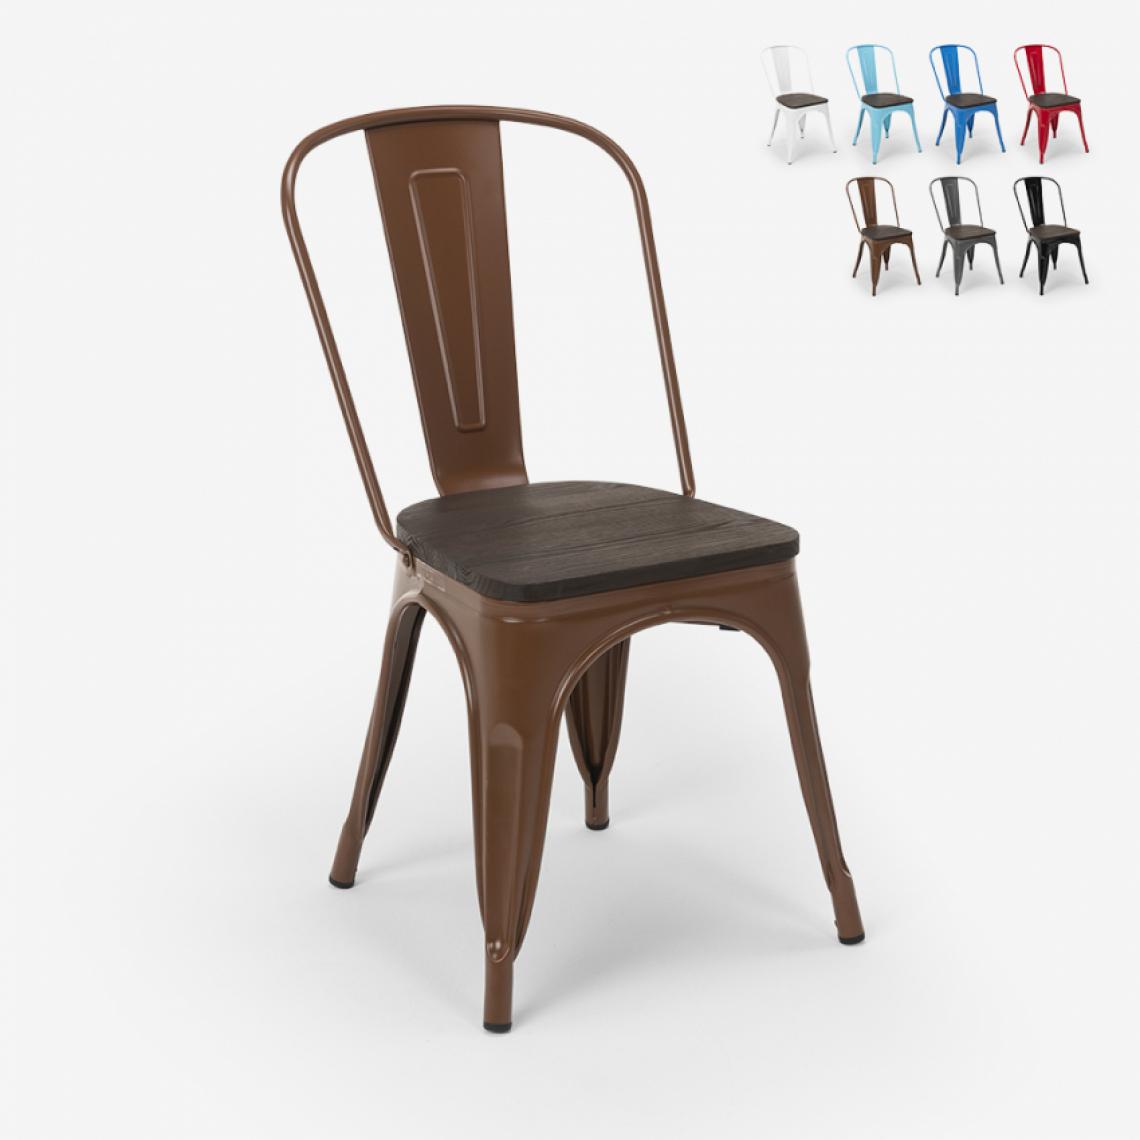 Ahd Amazing Home Design - Chaises industrielles en bois et acier Tolix pour cuisine et bar Steel Wood, Couleur: Marron - Chaises